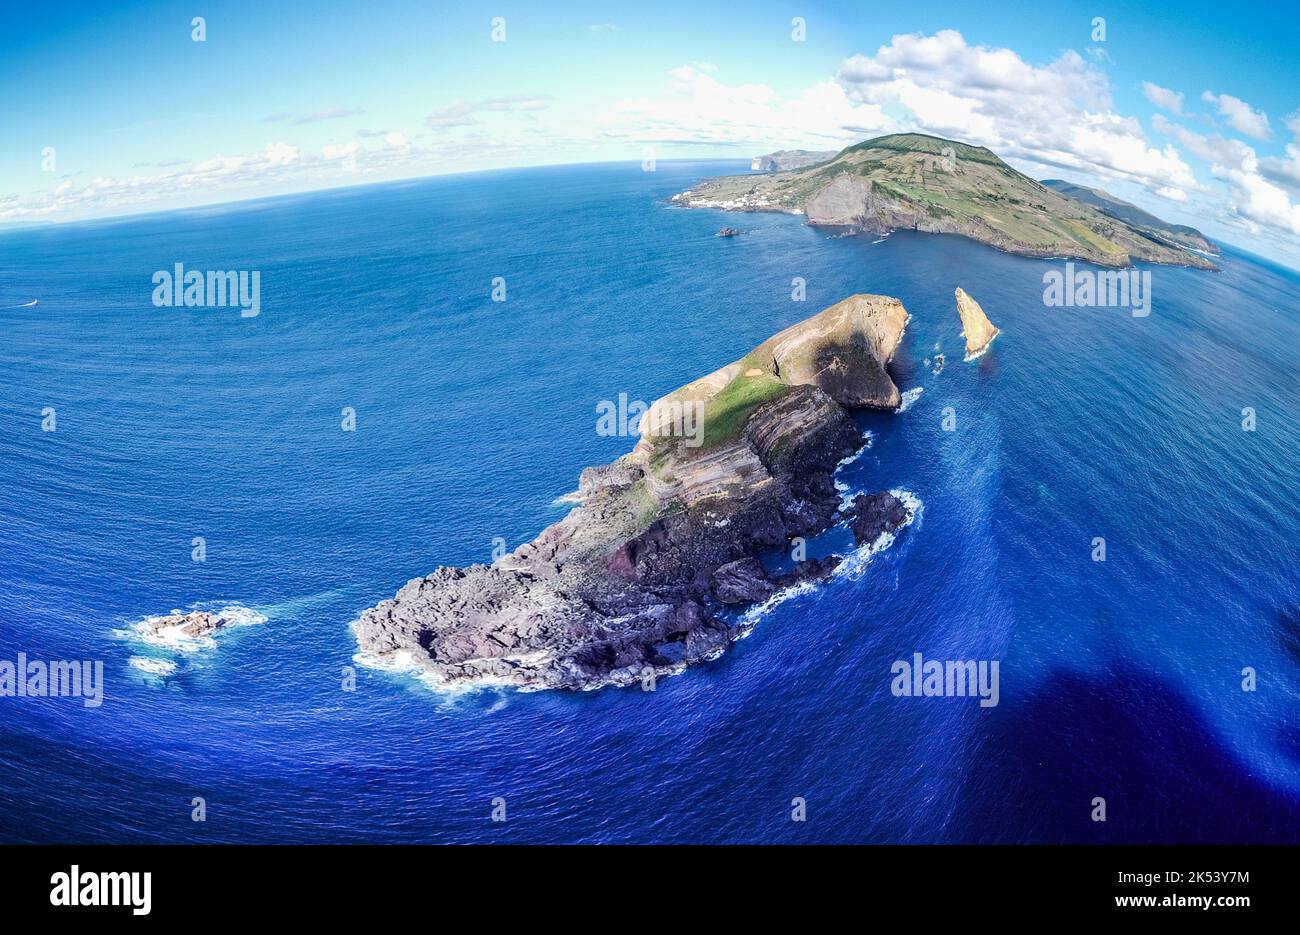 Isla de Graciosa (Azores, Portugal, Europa) desde arriba, foto de aviones no tripulados Foto de stock